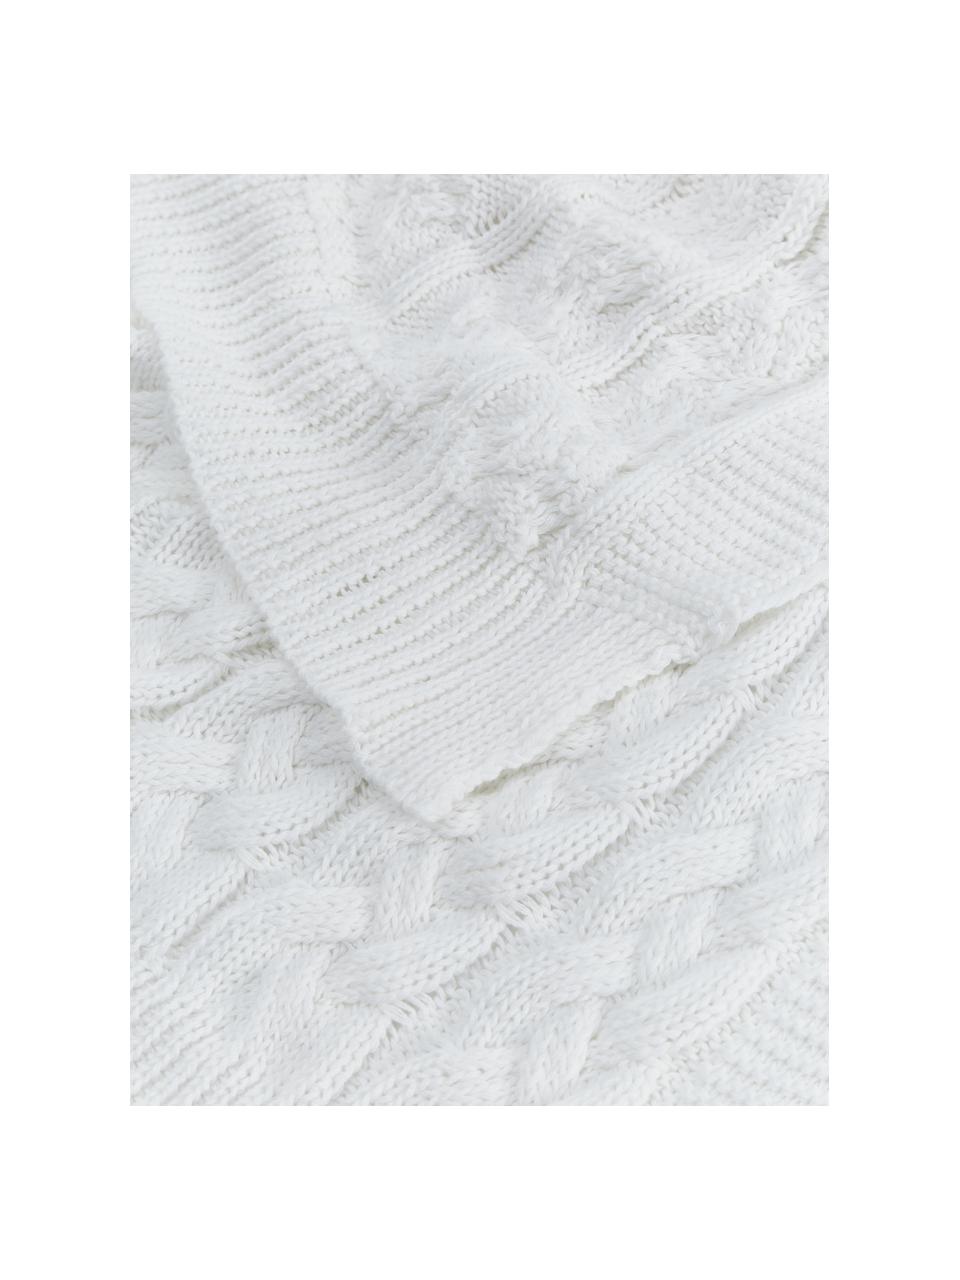 Strickdecke Caleb in Weiß, 100% gekämmte Baumwolle, Weiß, B 130 x L 170 cm